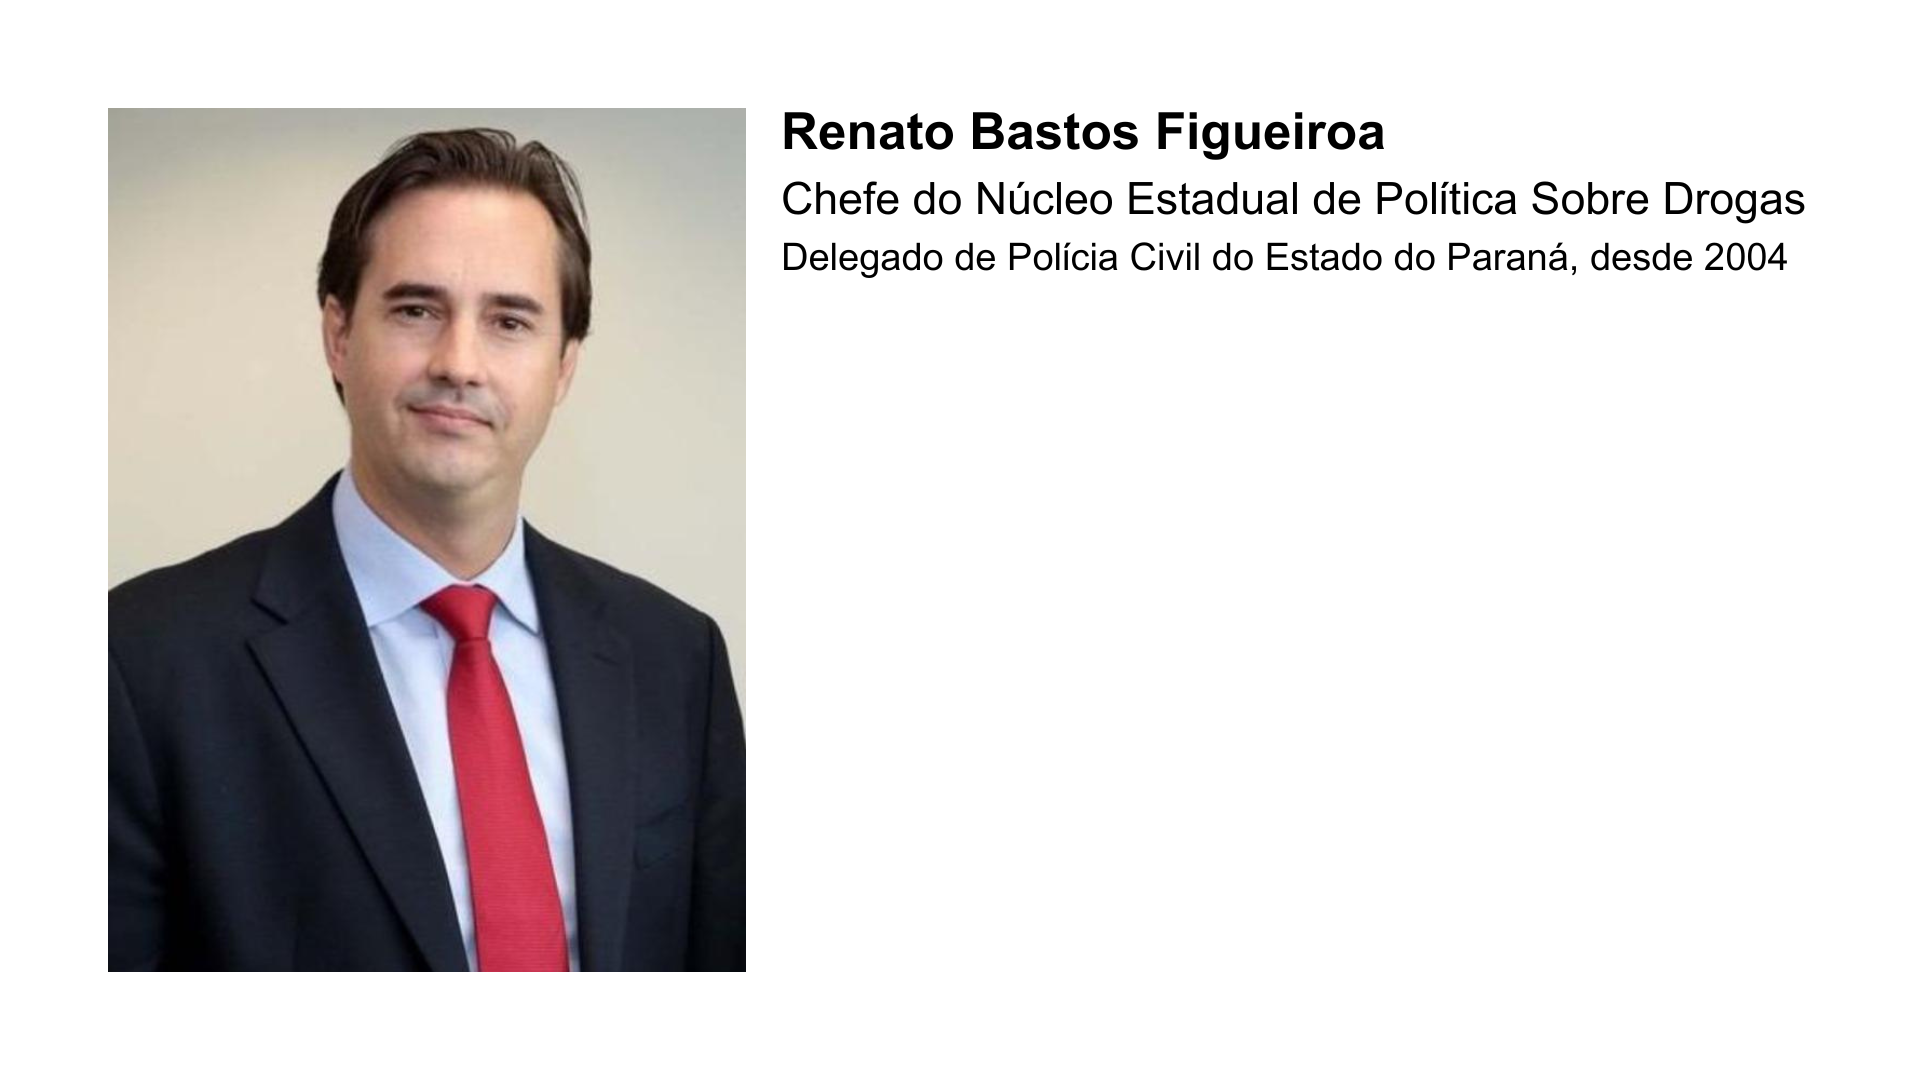 Renato Bastos Figueiroa